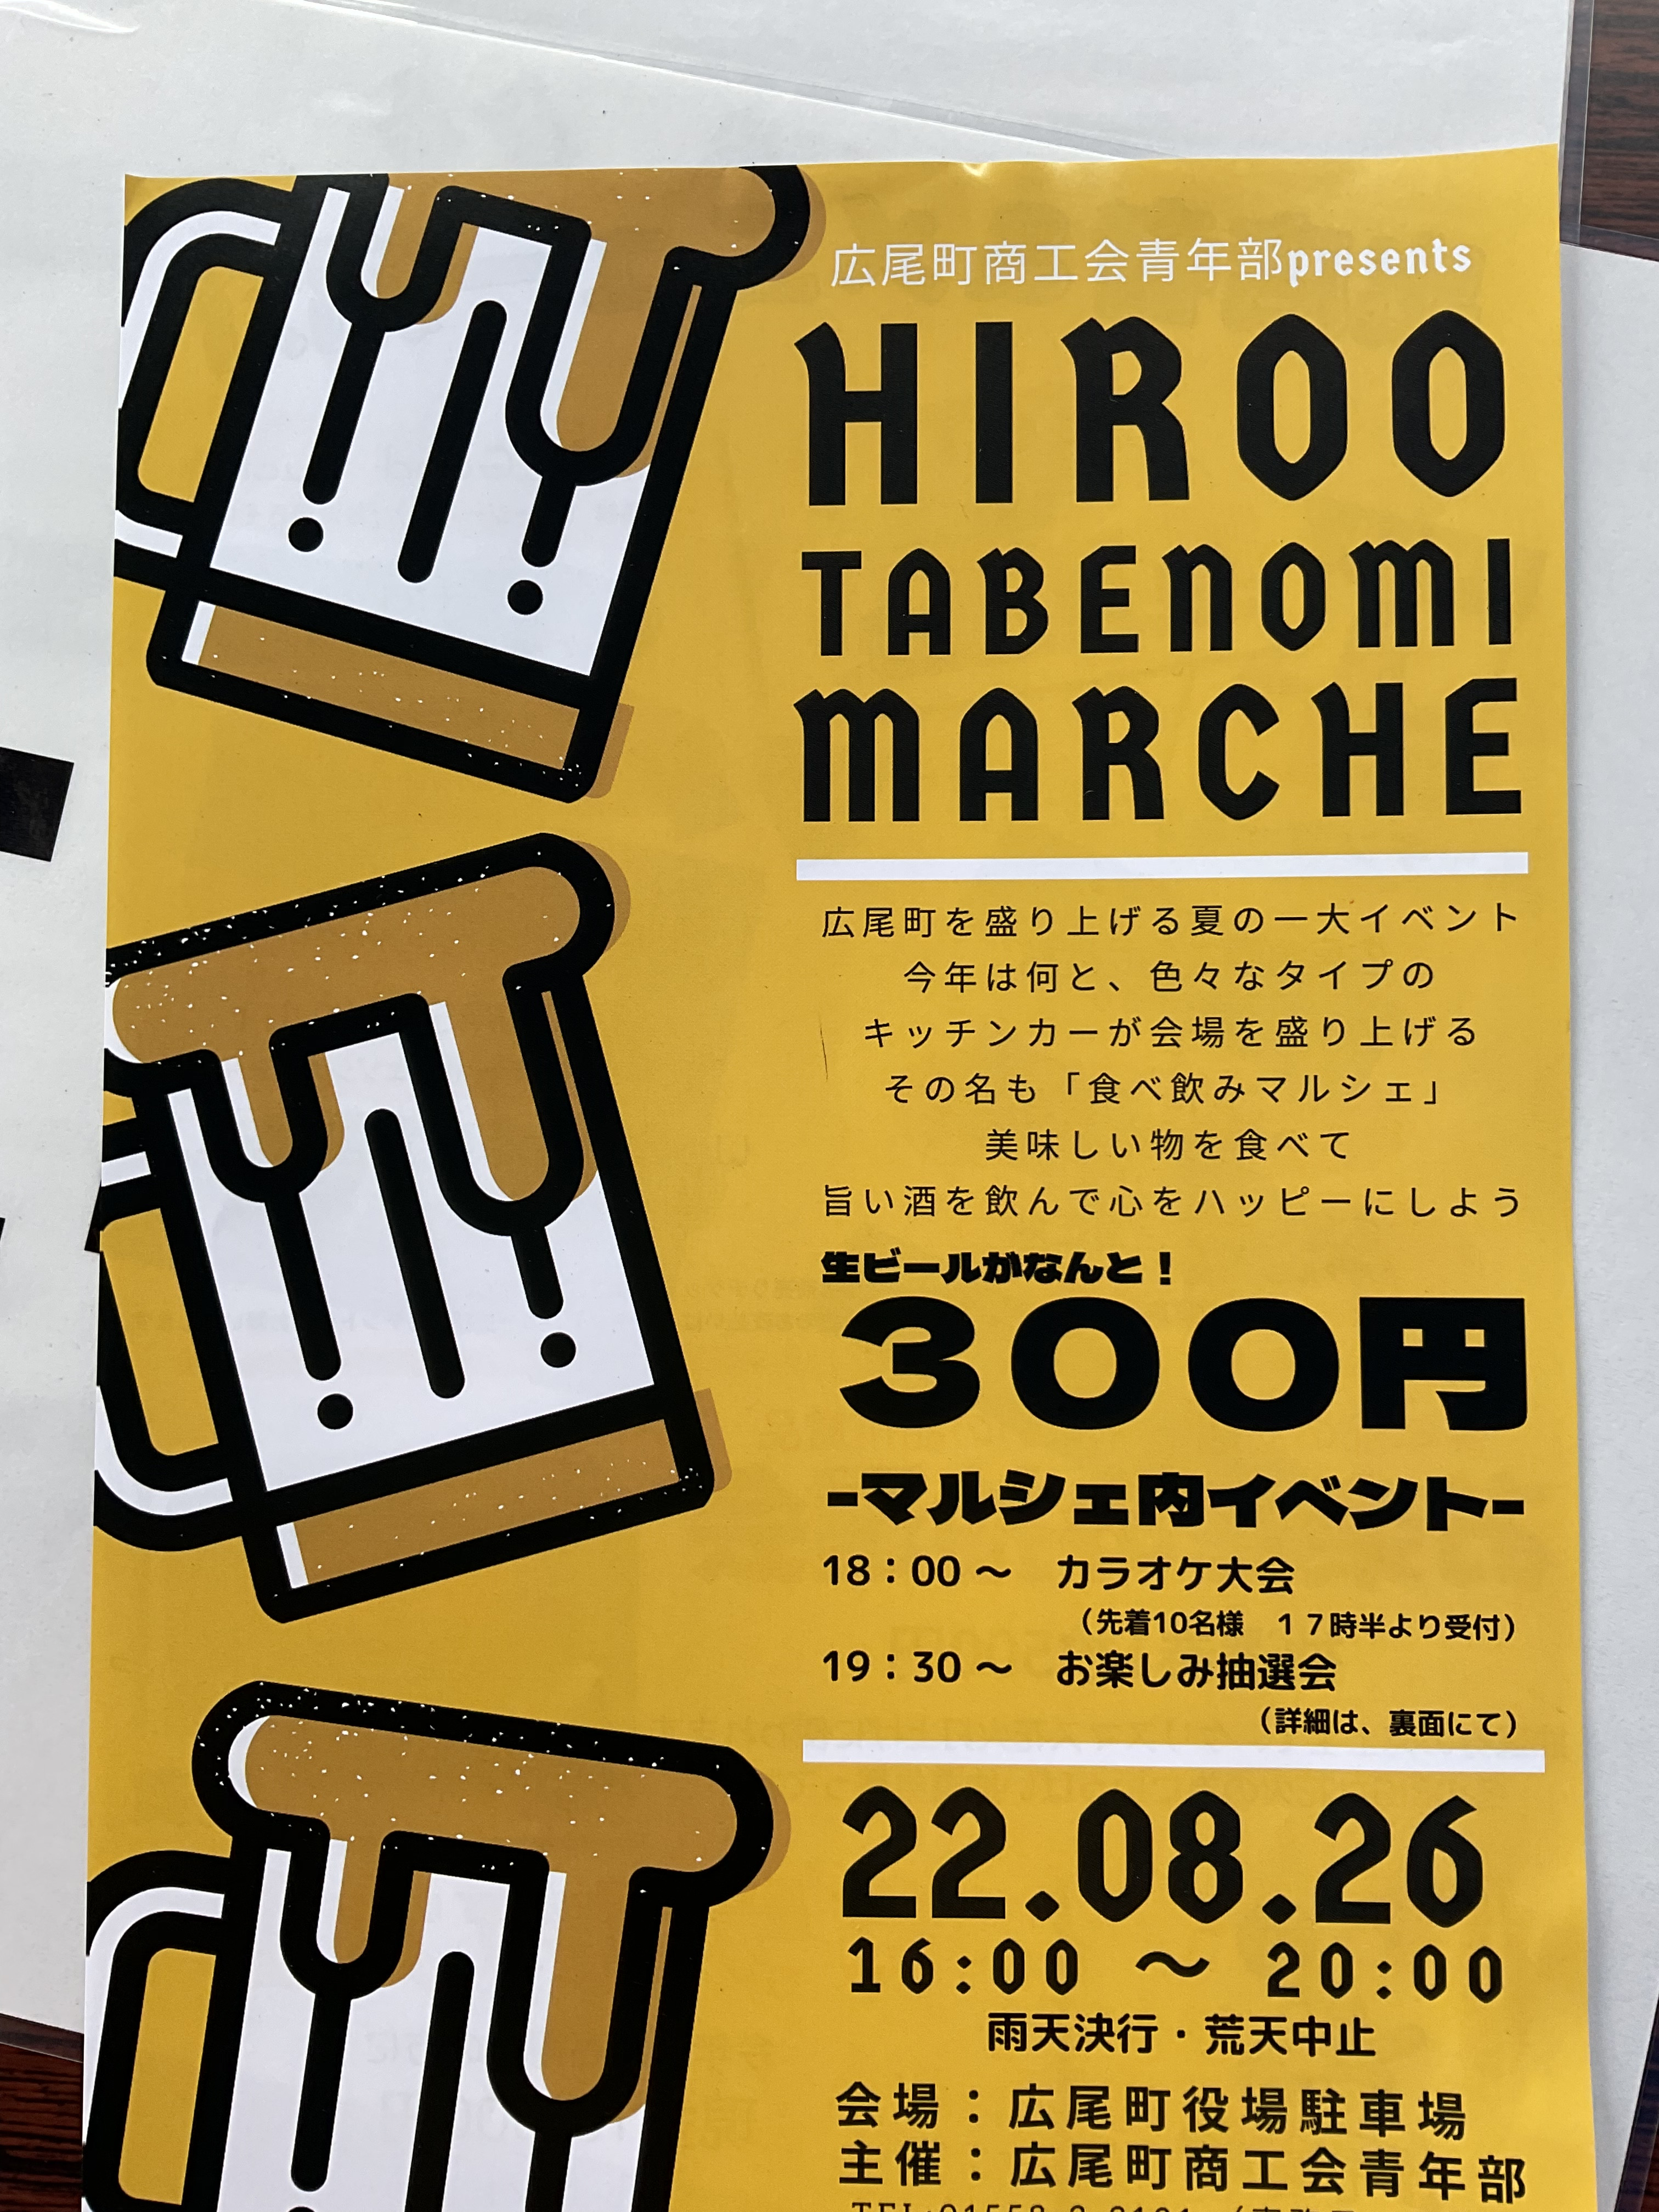 本日HIROO TABENOMI MARCHE 開催